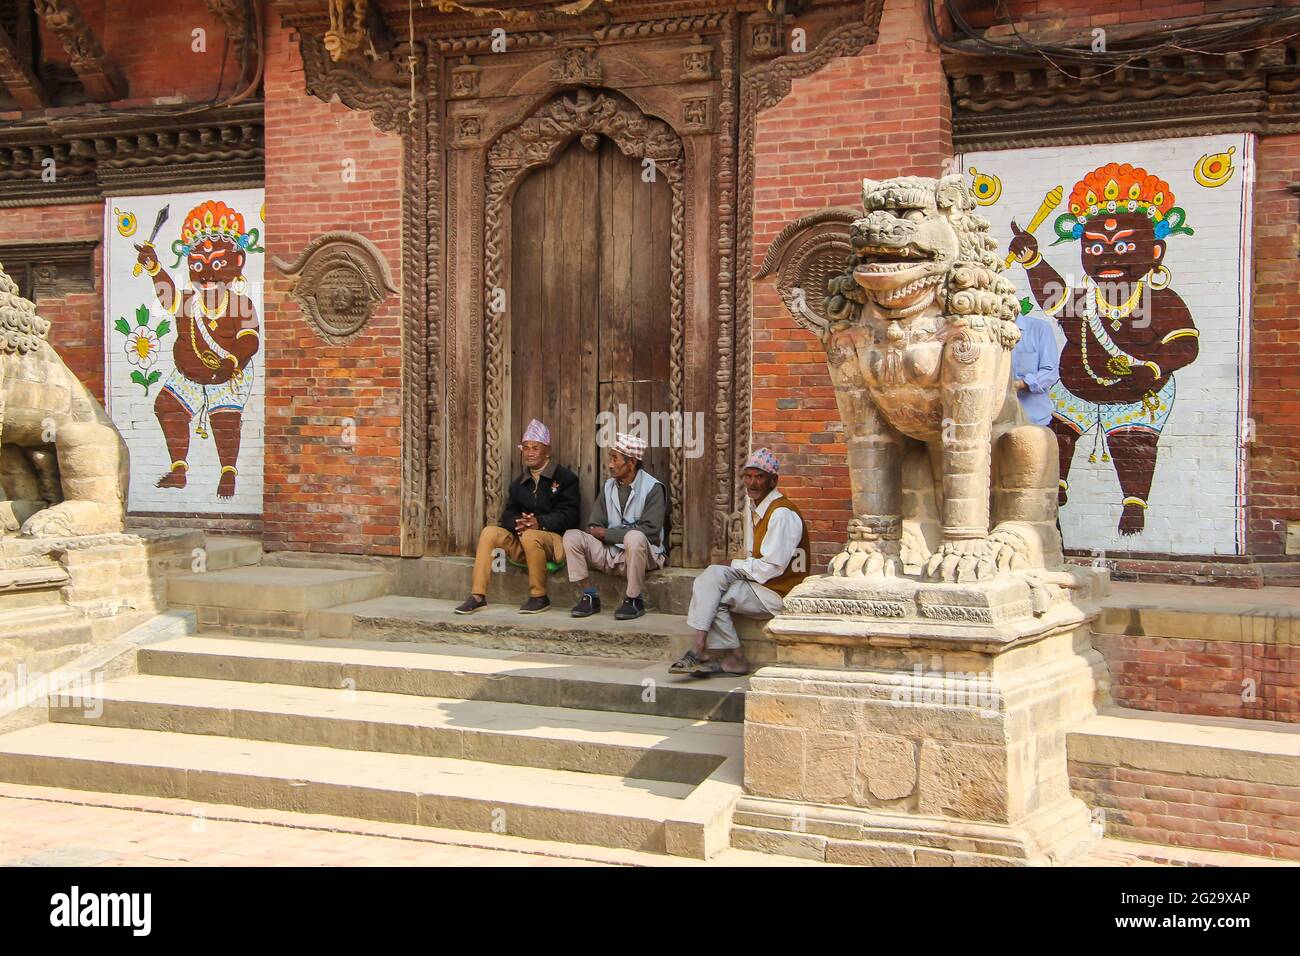 Un gruppo di uomini nepalesi si rilassano all'esterno di un edificio storico a Patan, Kathmandu, Nepal. Indossano il dhaka topi, il tradizionale cappello nepalese. Foto Stock